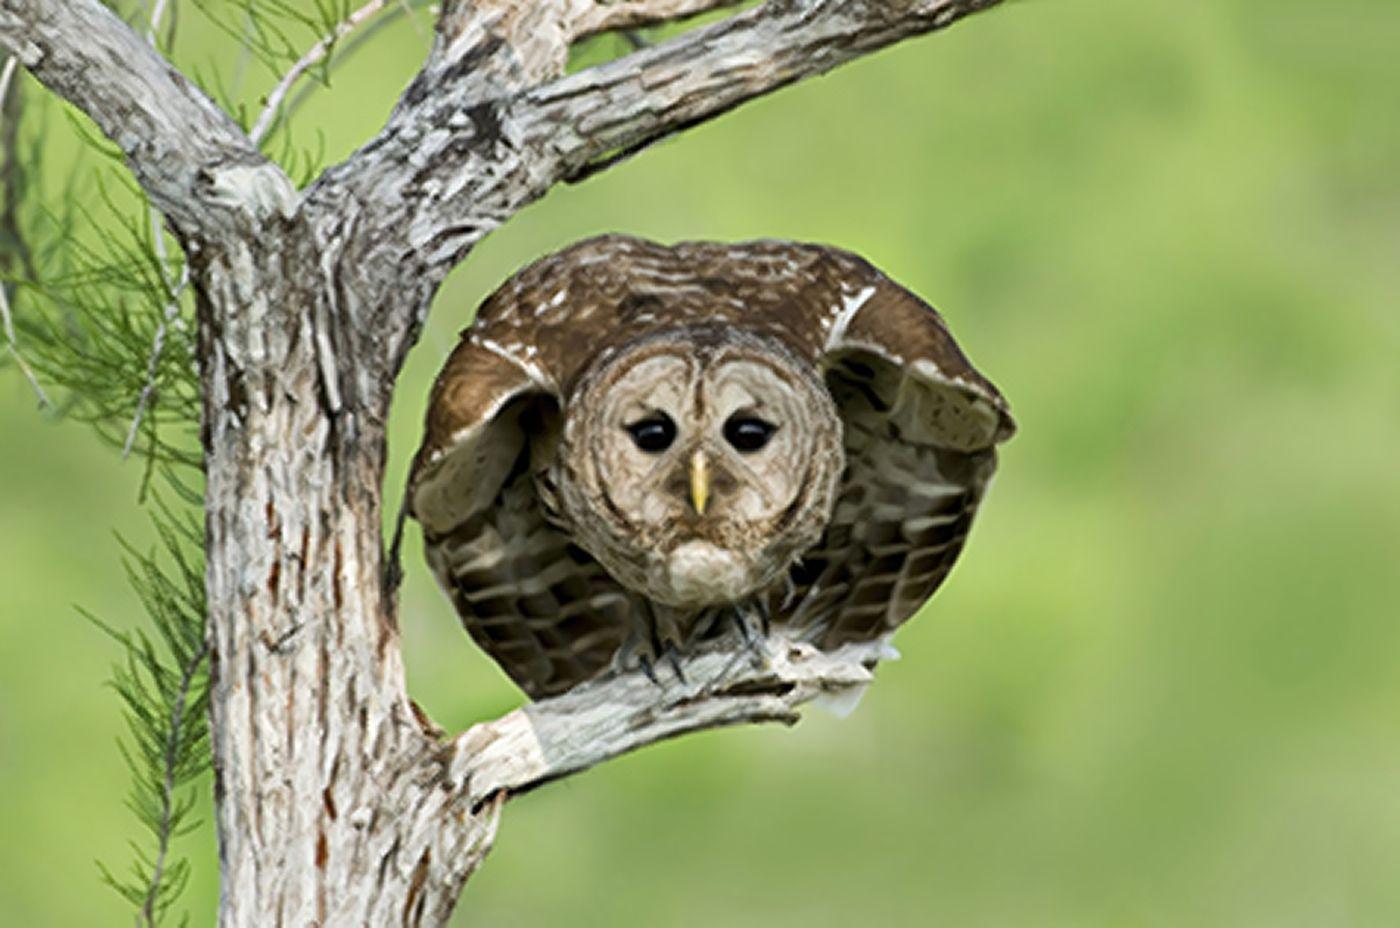 Fear Owl Eye Logo - Joggers run in fear as serial attacker (an owl) on loose in Oregon ...